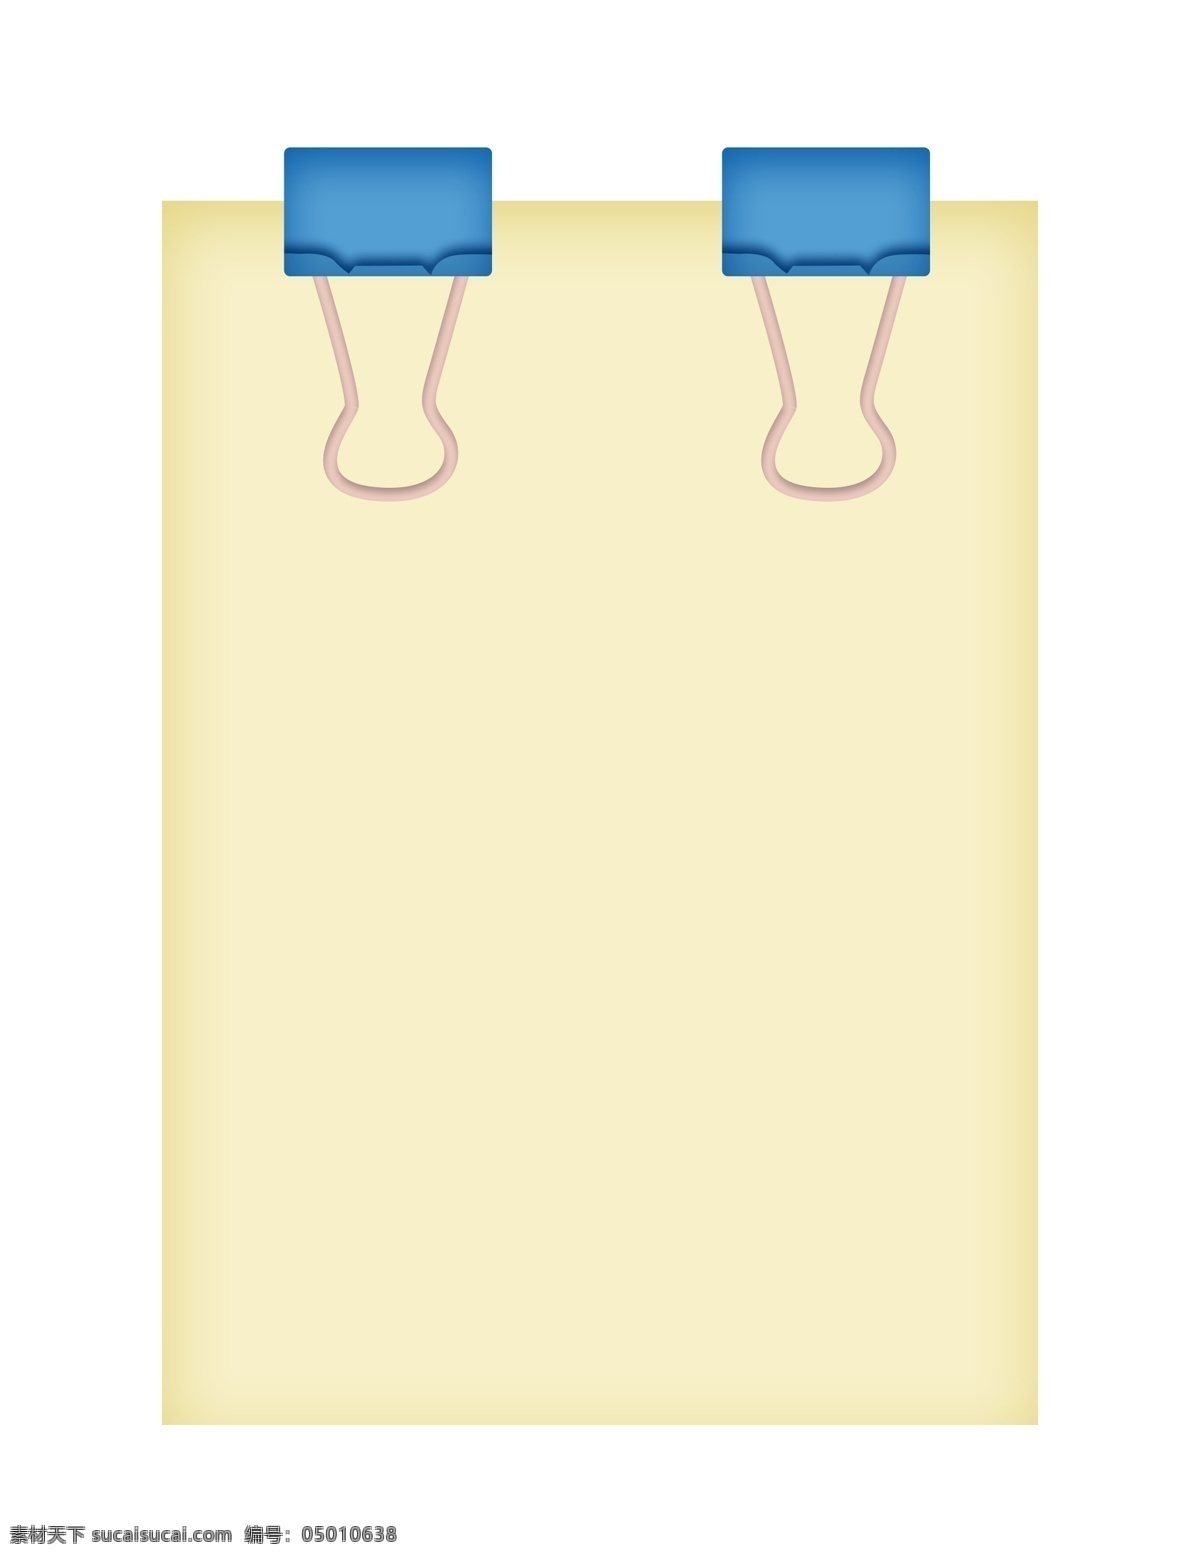 纸 夹子 的卡 通 插画 卡通插画 办公用品 纸夹子插画 燕尾夹插画 蓝色的夹子 纸夹子